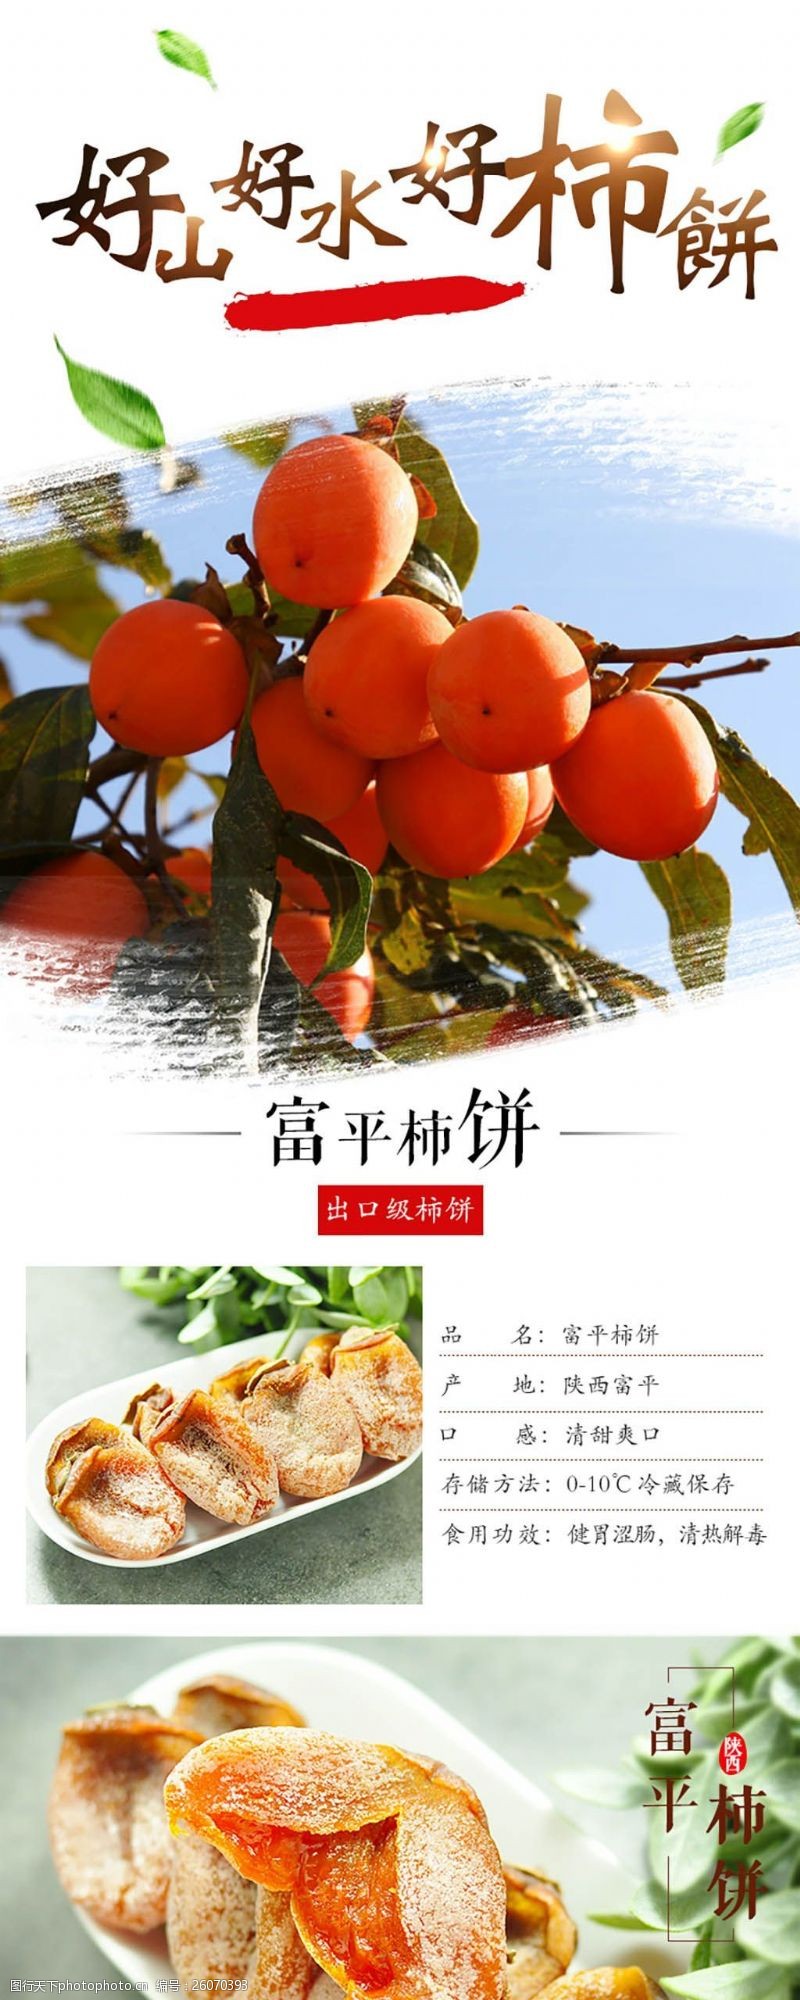 生鲜水果电商微商详情页模板富平柿饼